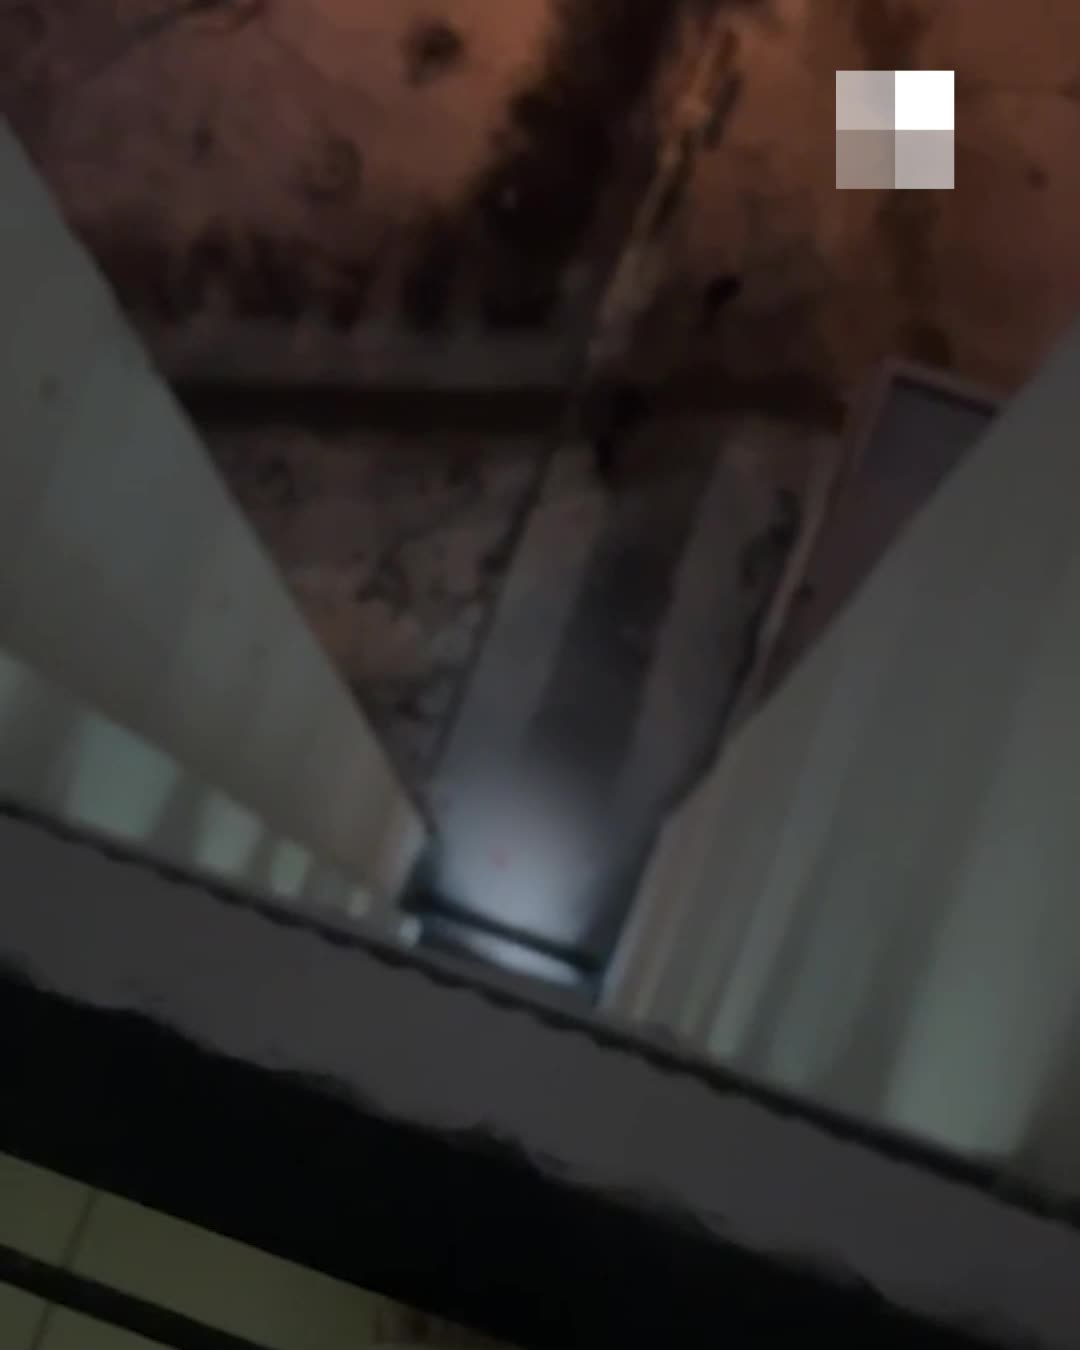 Скрытая Камера в душе женского общежития - видео онлайн